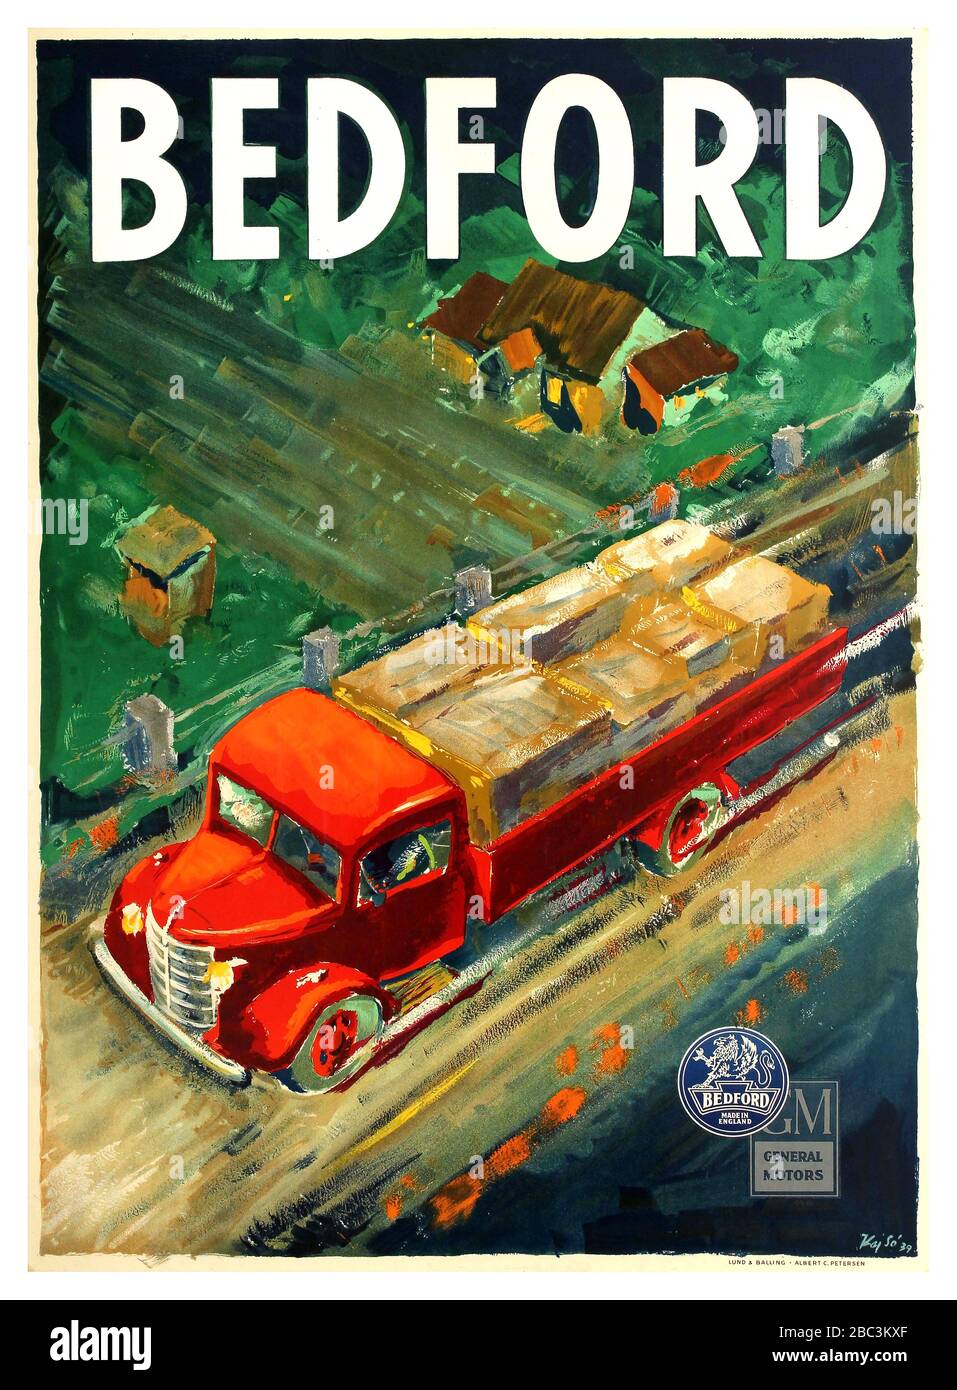 BEDFORD TRUCKS affiche publicitaire Vintage pour le constructeur britannique de camions Bedford avec une vue aérienne d'un camion rouge chargé Bedford conduite dans la campagne après une maison et un champ avec le texte ci-dessus et les logos Bedford et General Motors ci-dessous. Basé à Luton Bedfordshire, Bedford Vehicles a été fondé en 1930 par Vauxhall Motors pour produire des camions, camions et fourgonnettes commerciaux; la société a été reprise par la société américaine General Motors en 1925. Imprimé par Lund & Balling - Albert C. Petersen. . Danemark, 1939, designer: Kaj SO, Banque D'Images